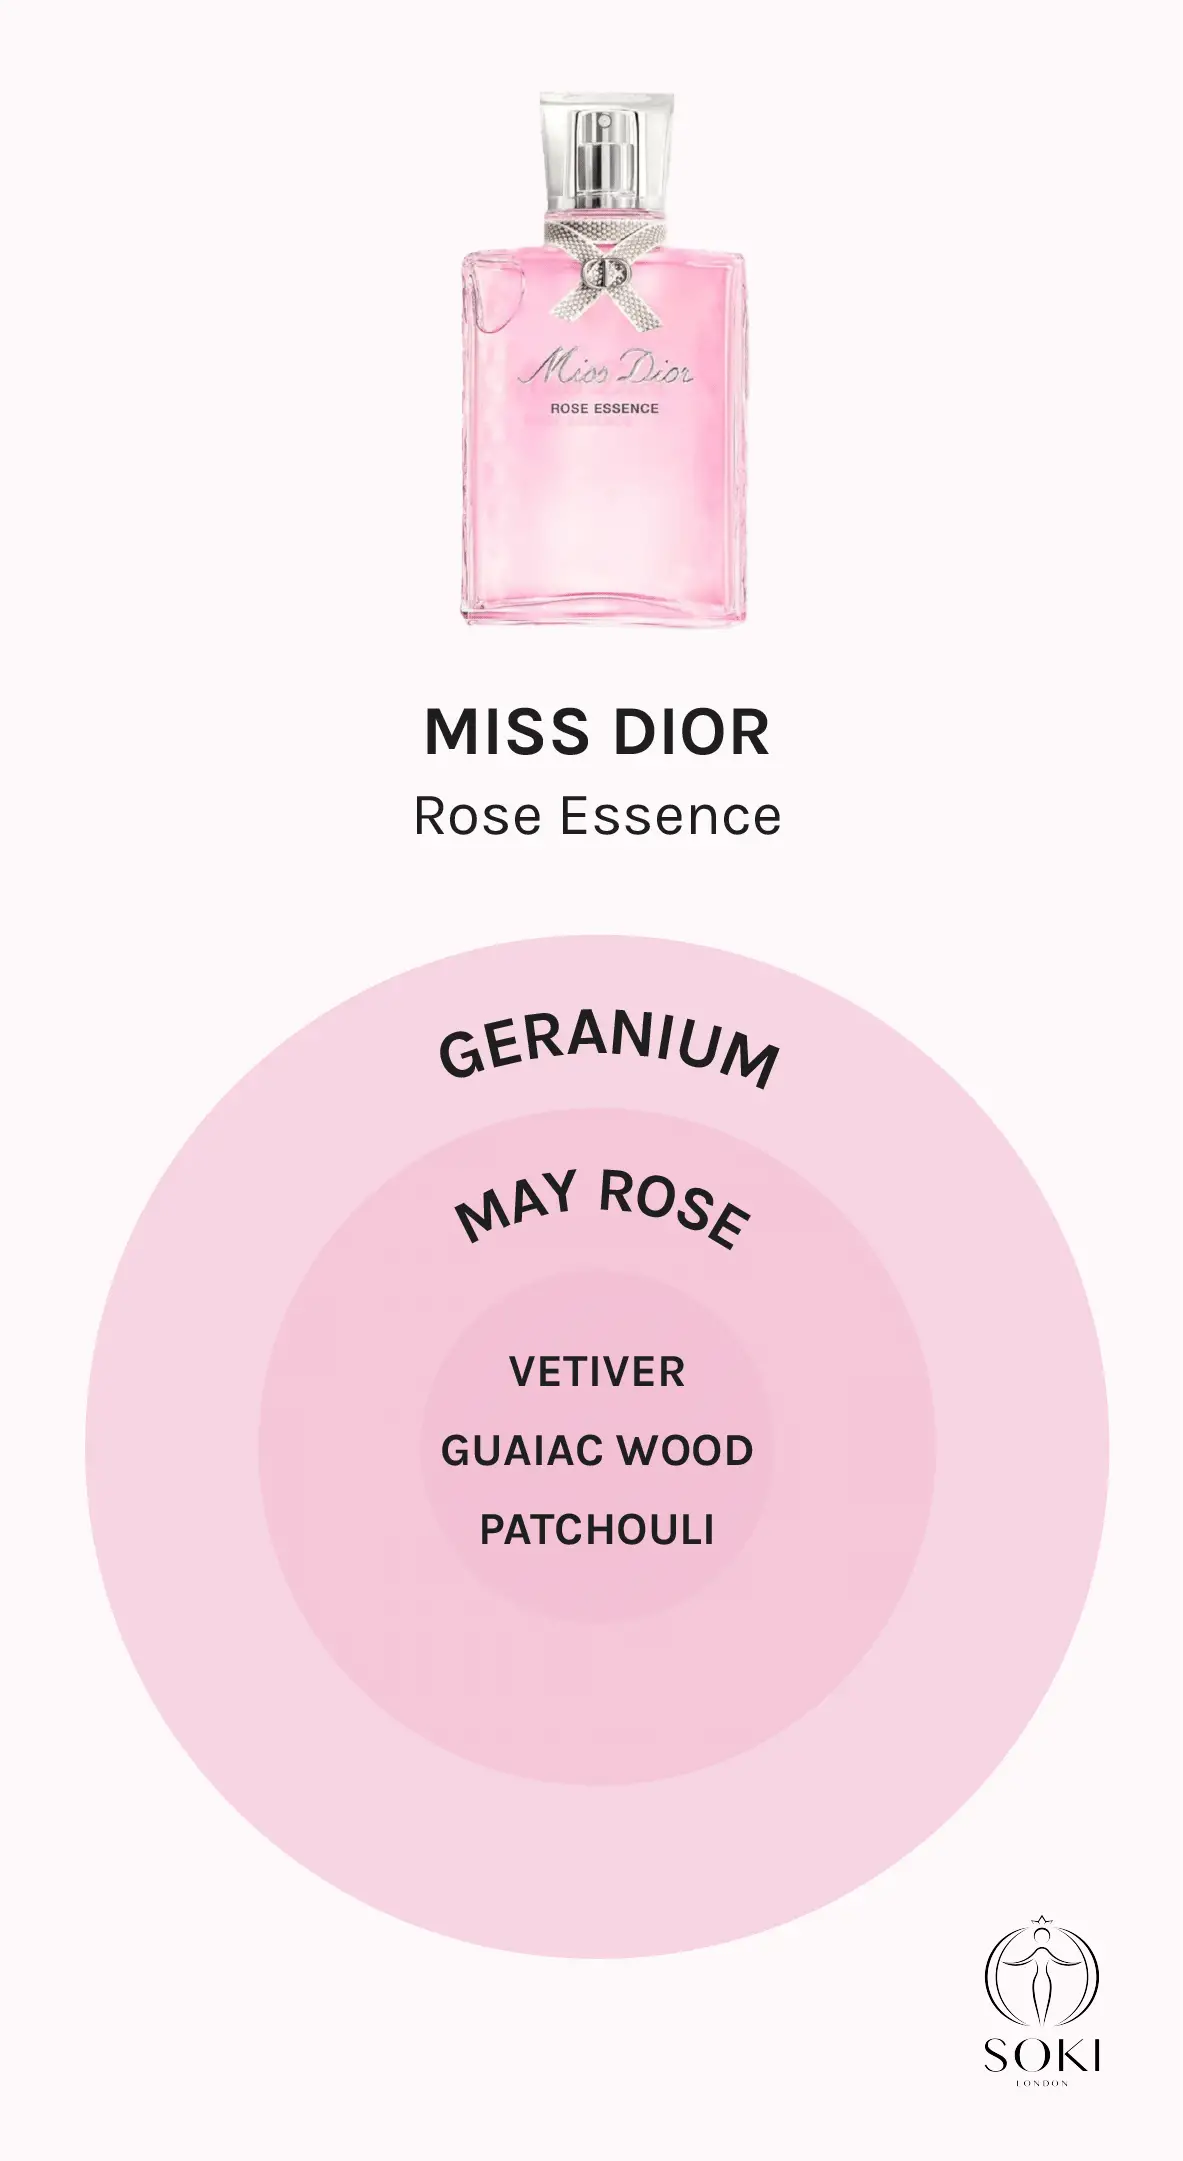 Miss Dior Rose Essence Fragrance Notes